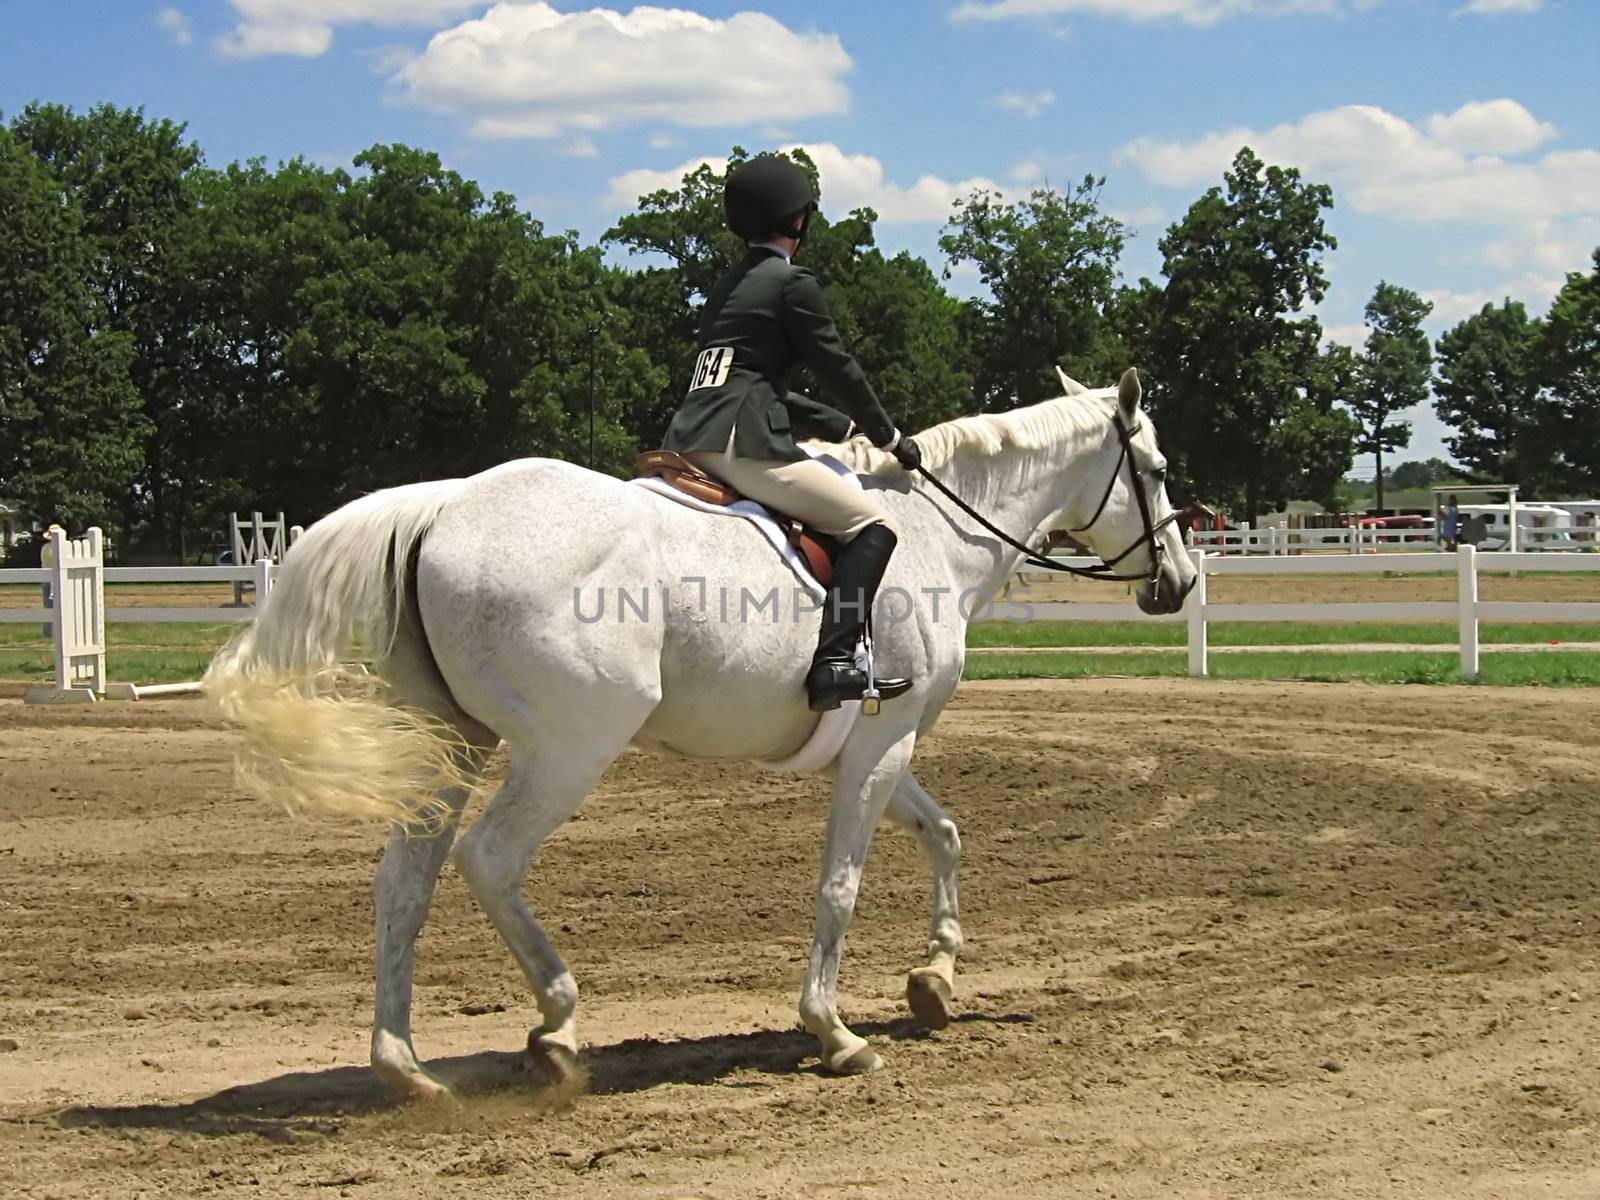 Horse & Rider by llyr8